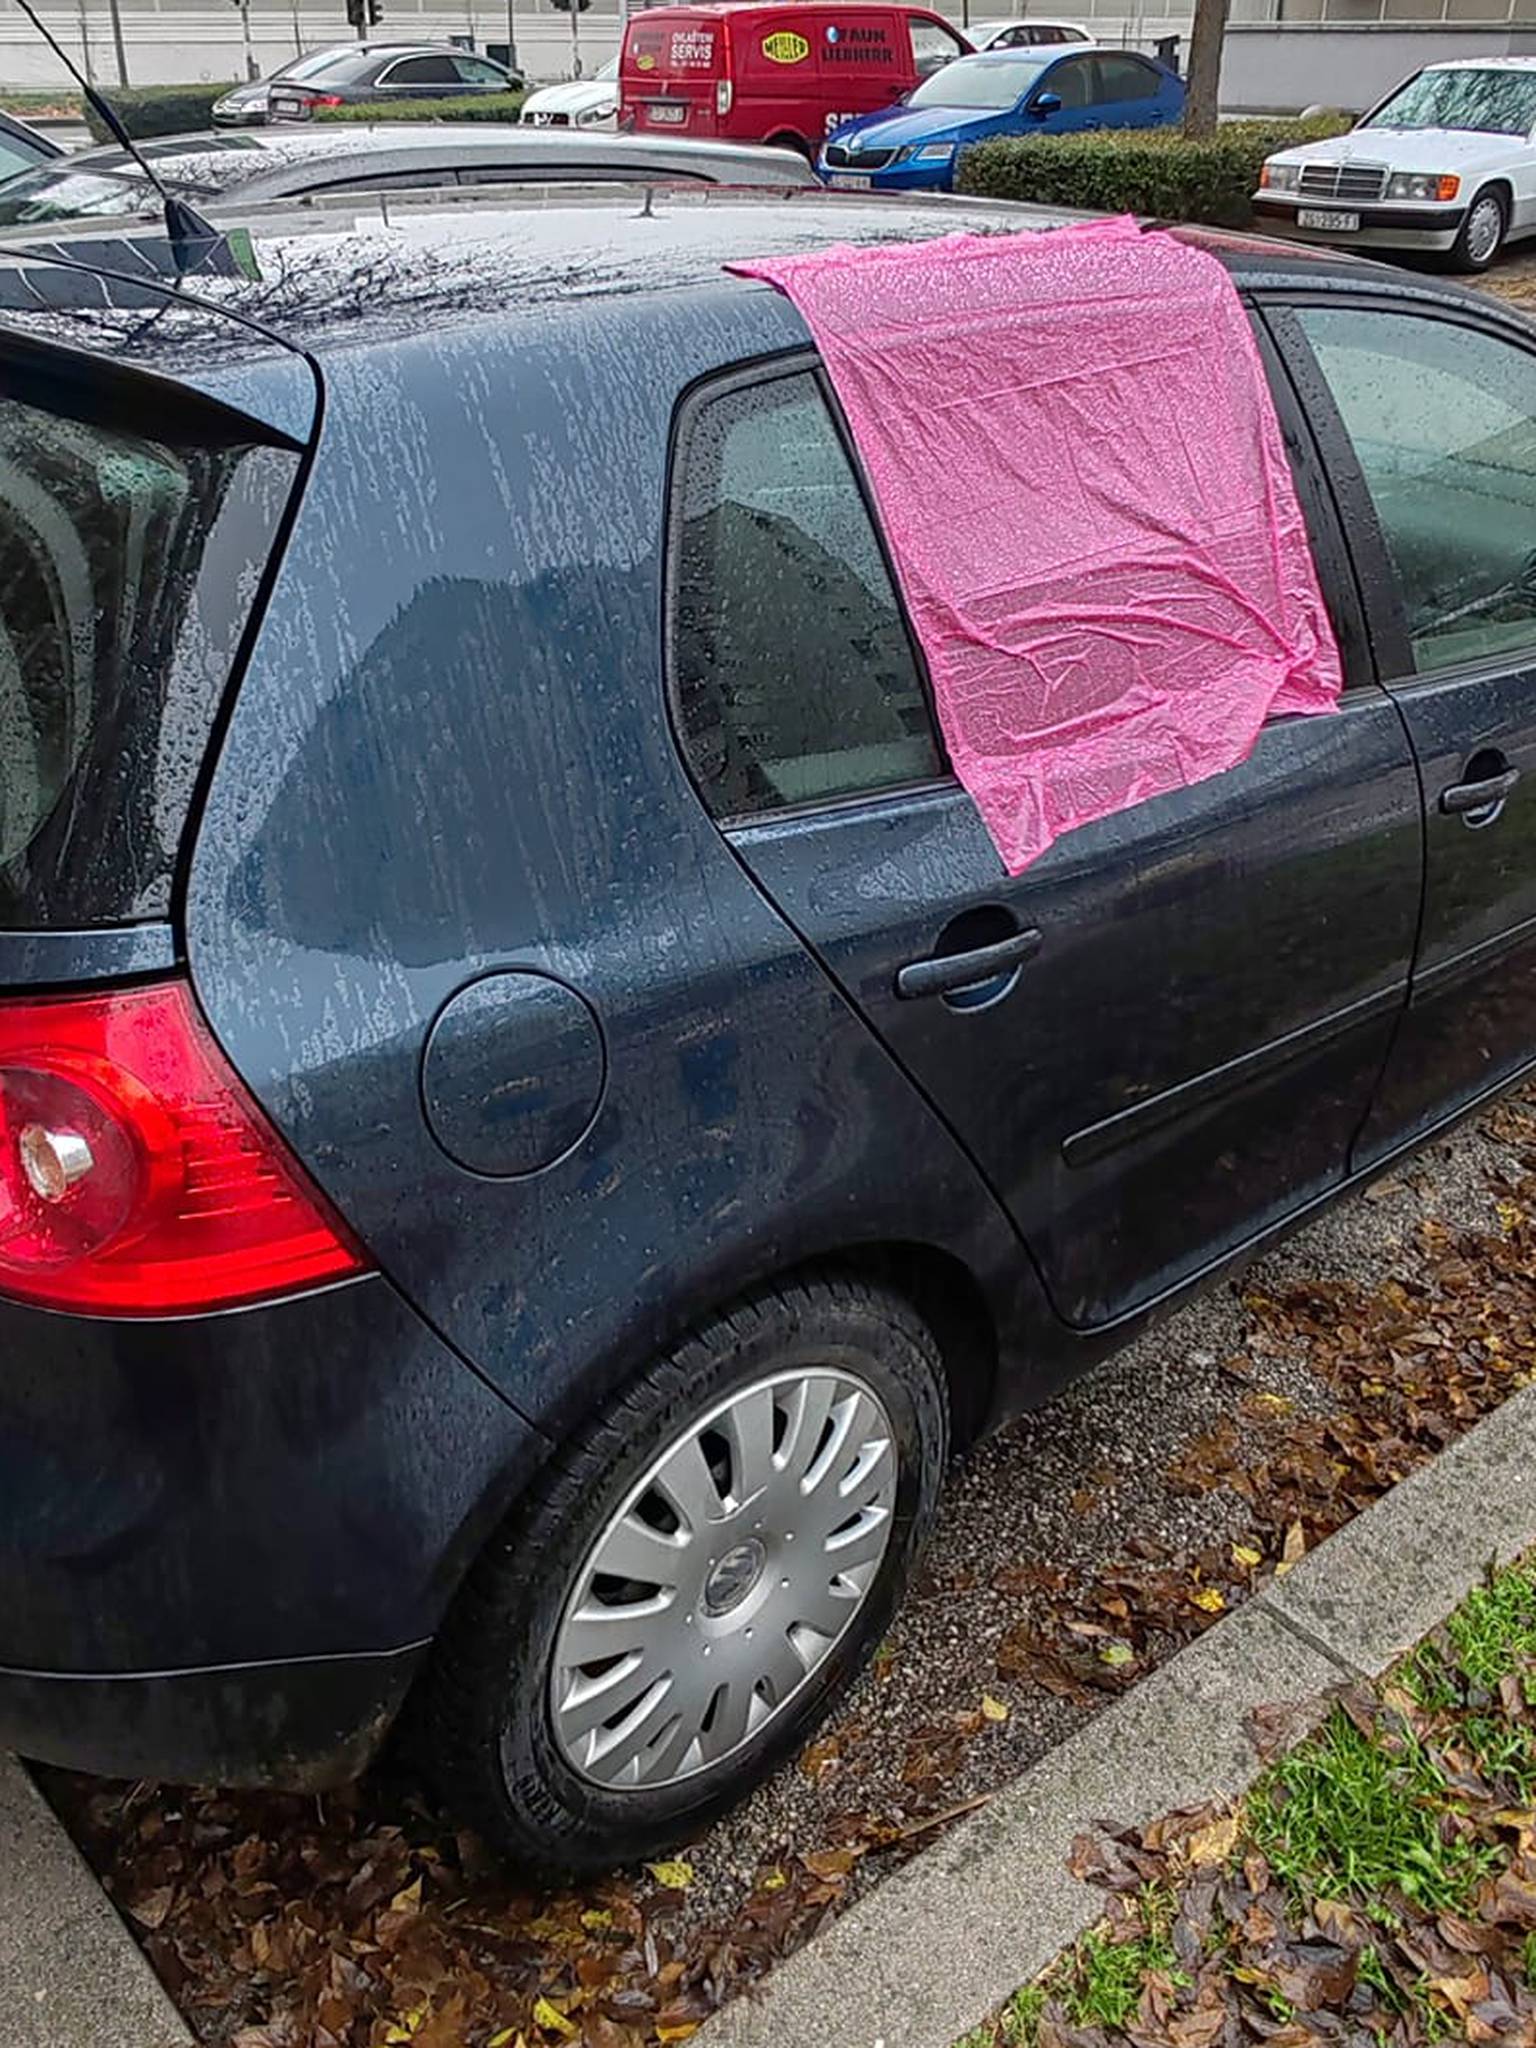 Riječanka je u Zagrebu ostavila otvoren prozor na autu: Tko god je ovo učinio, hvala! Nek se javi